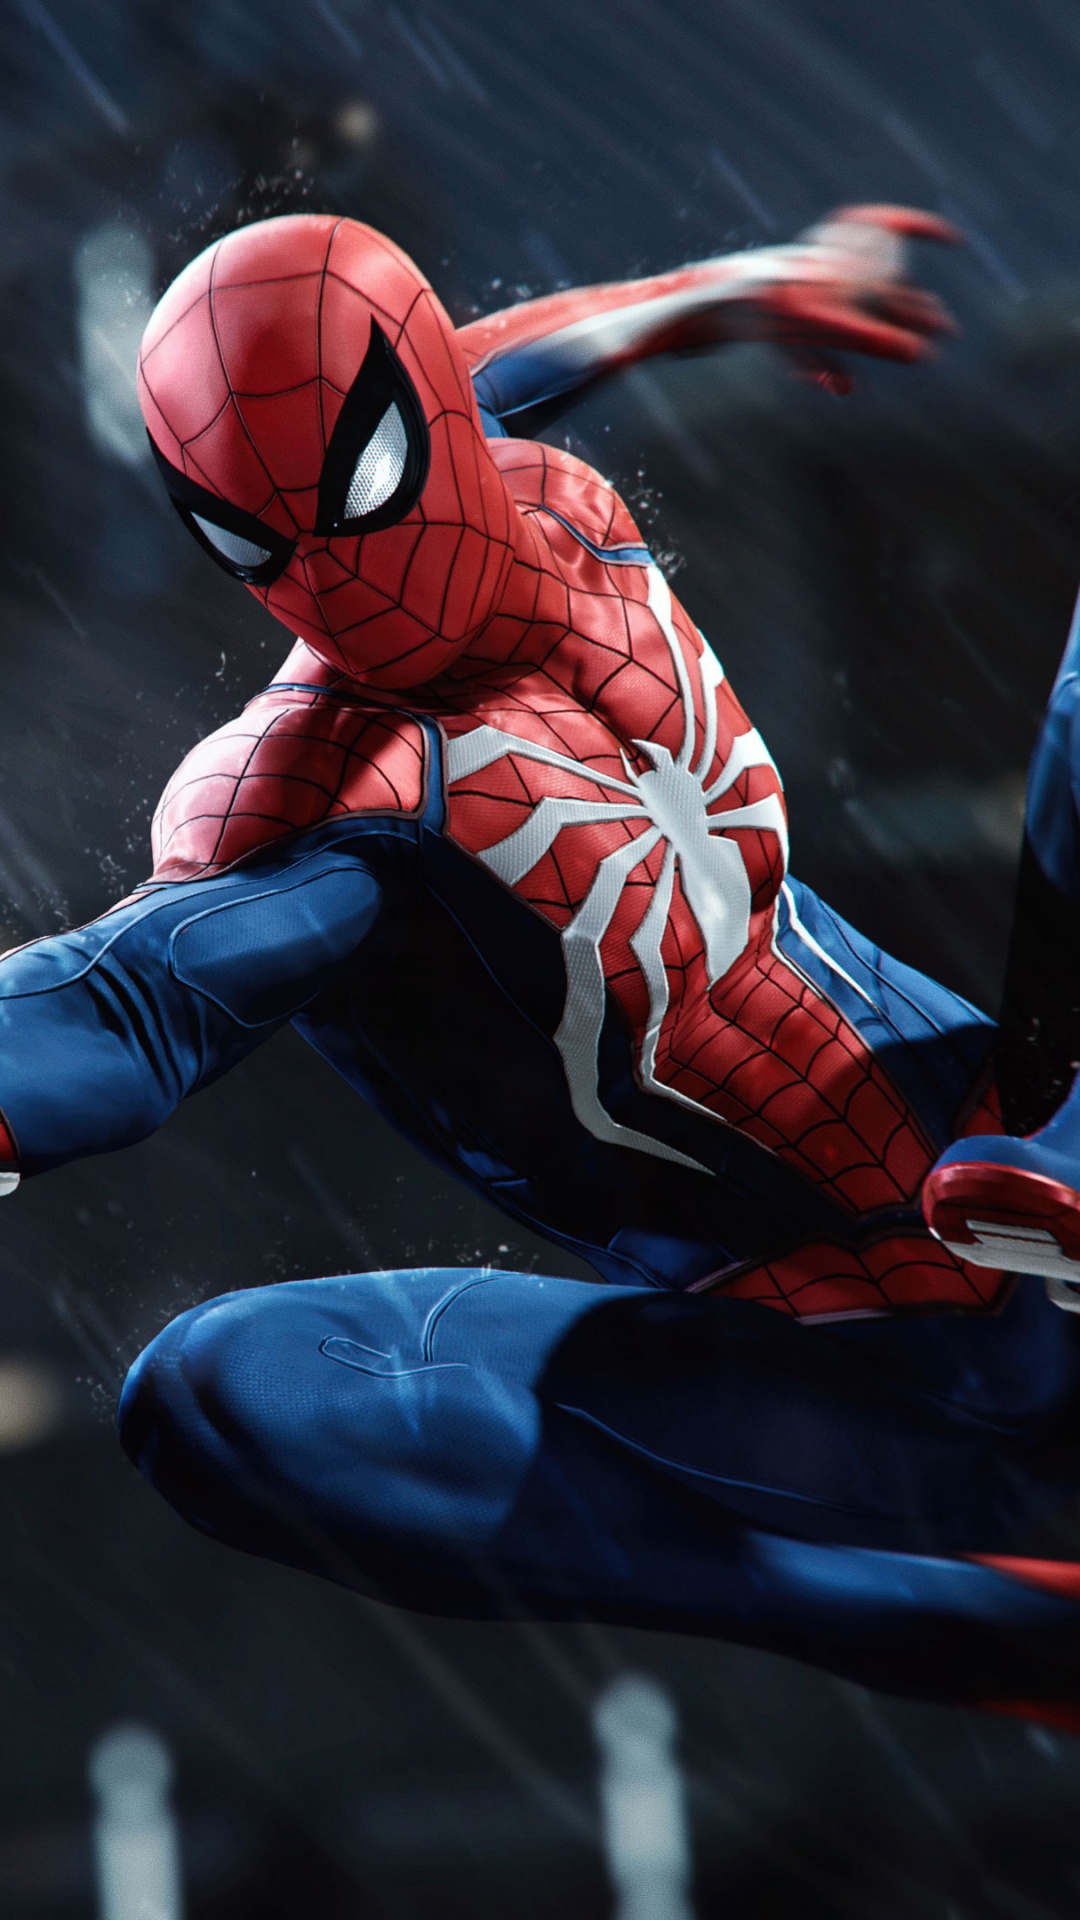 Spider-man, 患有失眠症的游戏, 超级英雄, 图行动, 虚构的人物 壁纸 1080x1920 允许